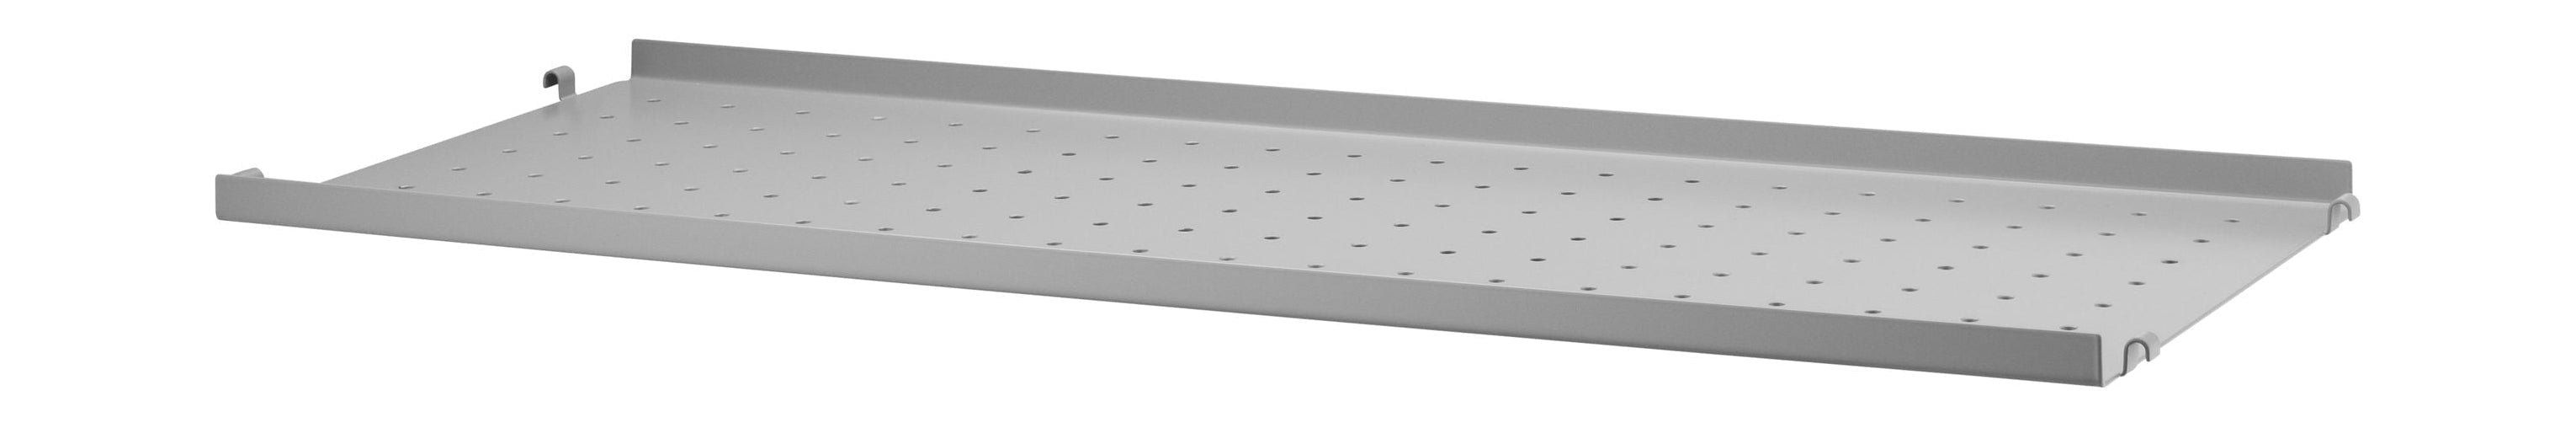 Strengmøbler Strengsystem Metalhylde med lav kant 30x78 cm, grå